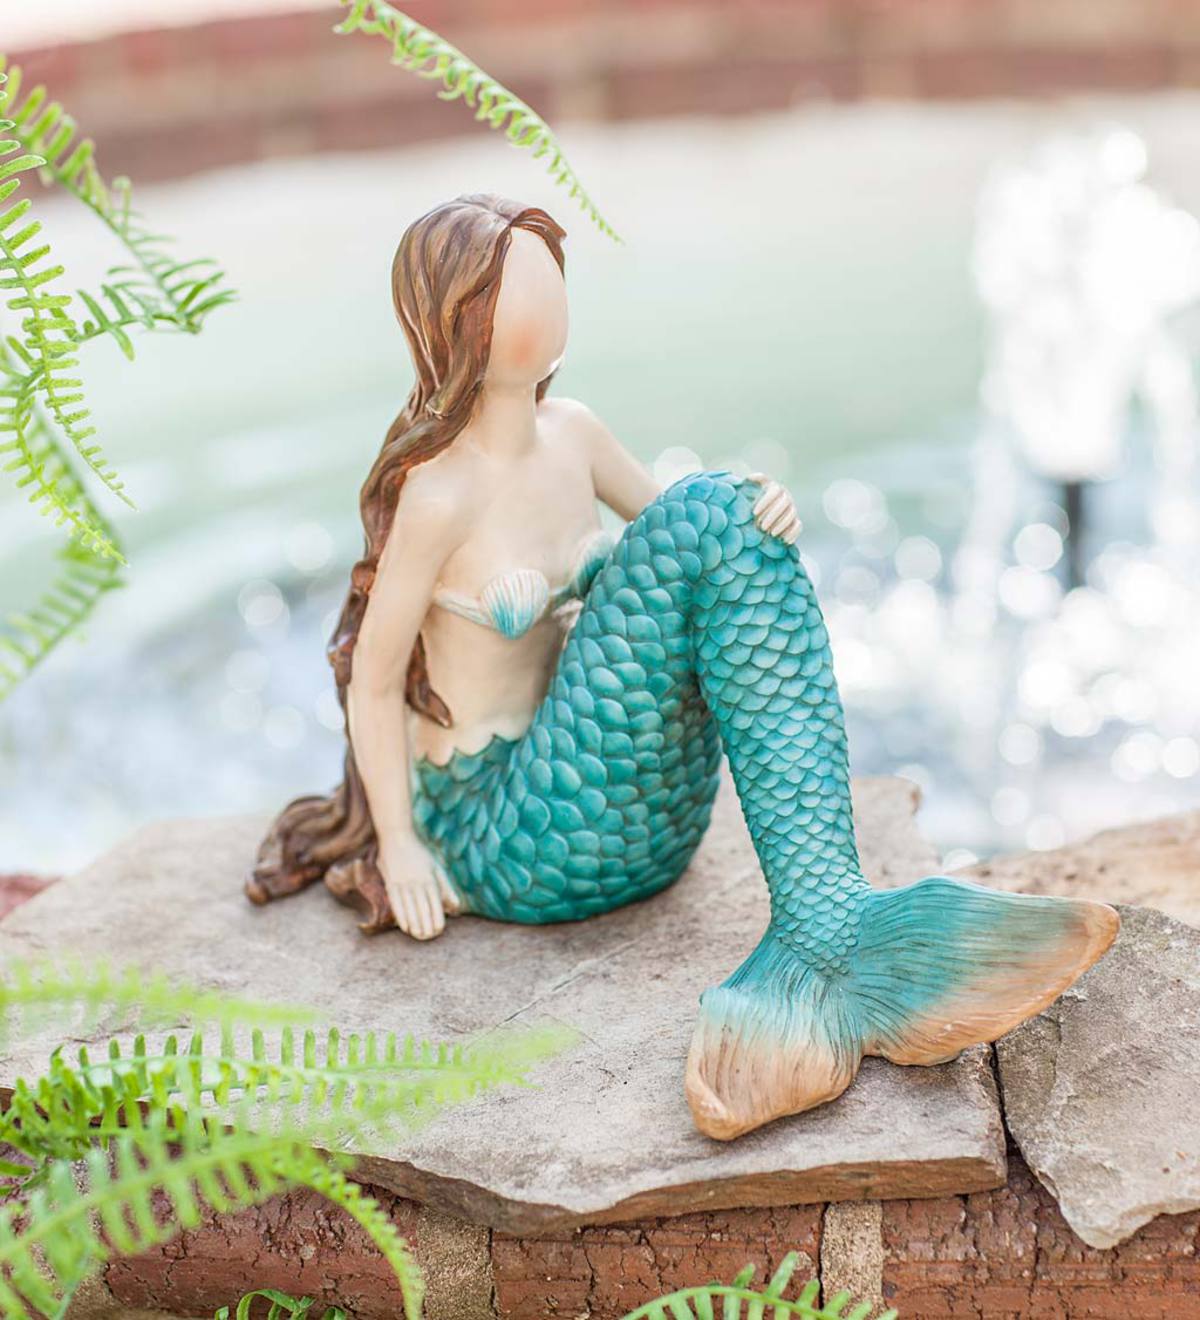 Indoor/Outdoor Mermaid Figurine